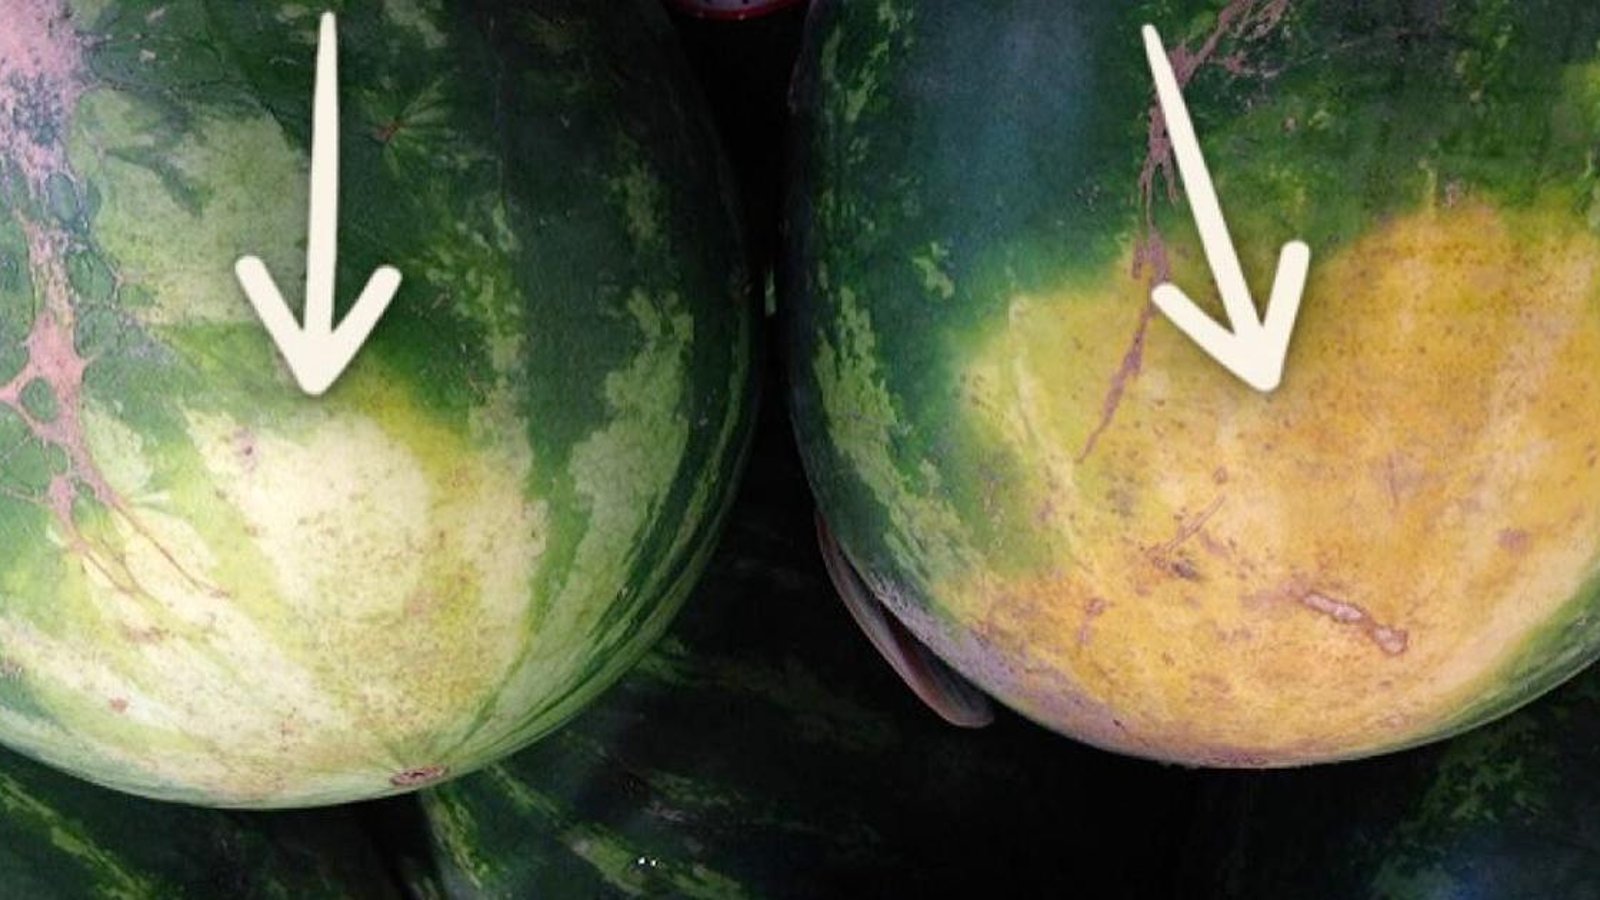 Un fermier expérimenté révèle les 5 choses à regarder pour acheter le melon d'eau parfait.